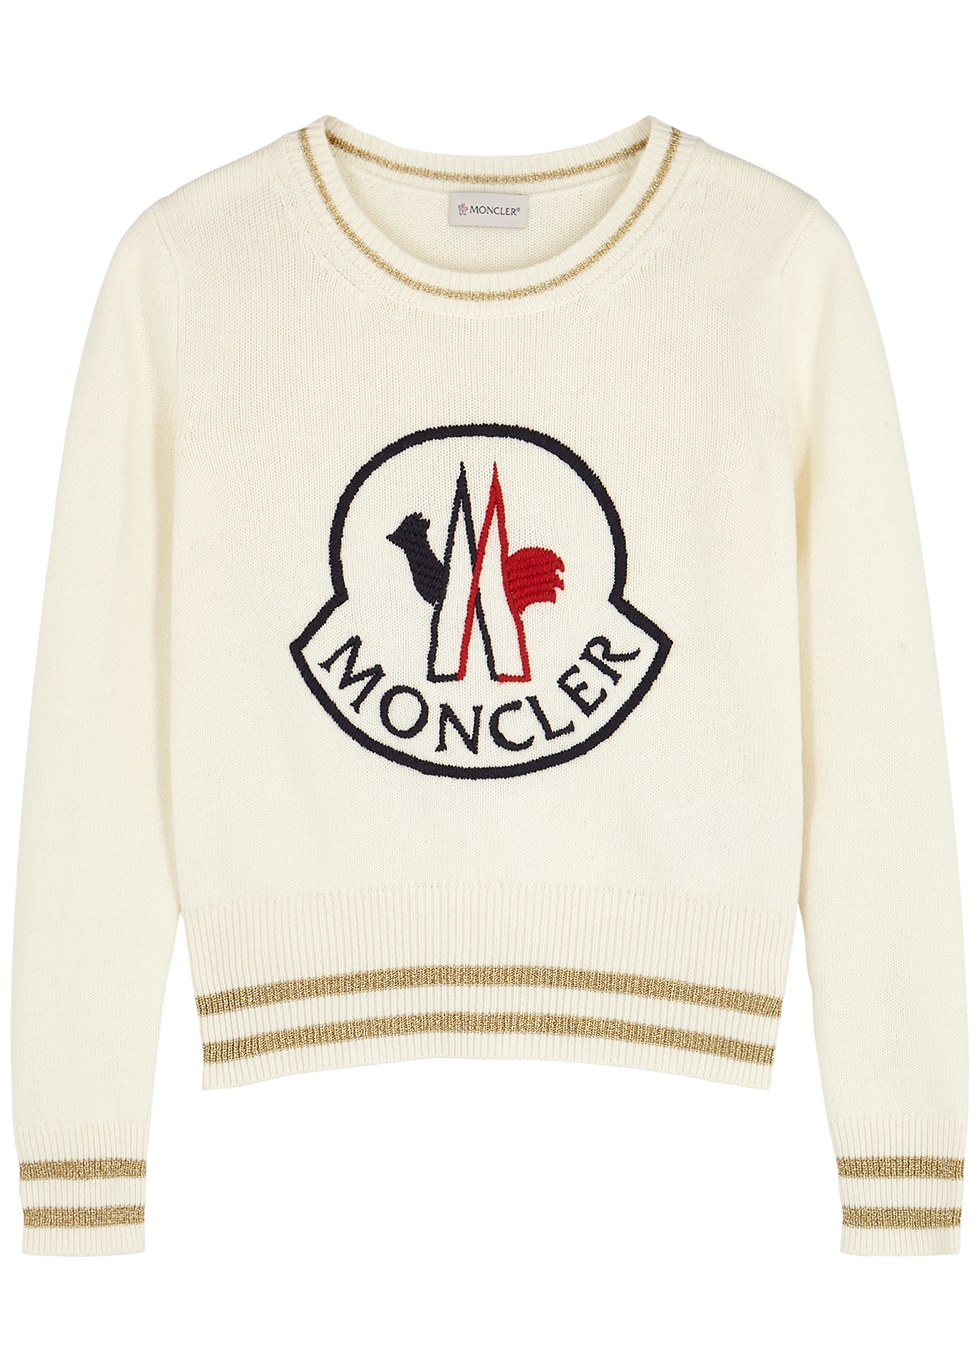 moncler wool jumper